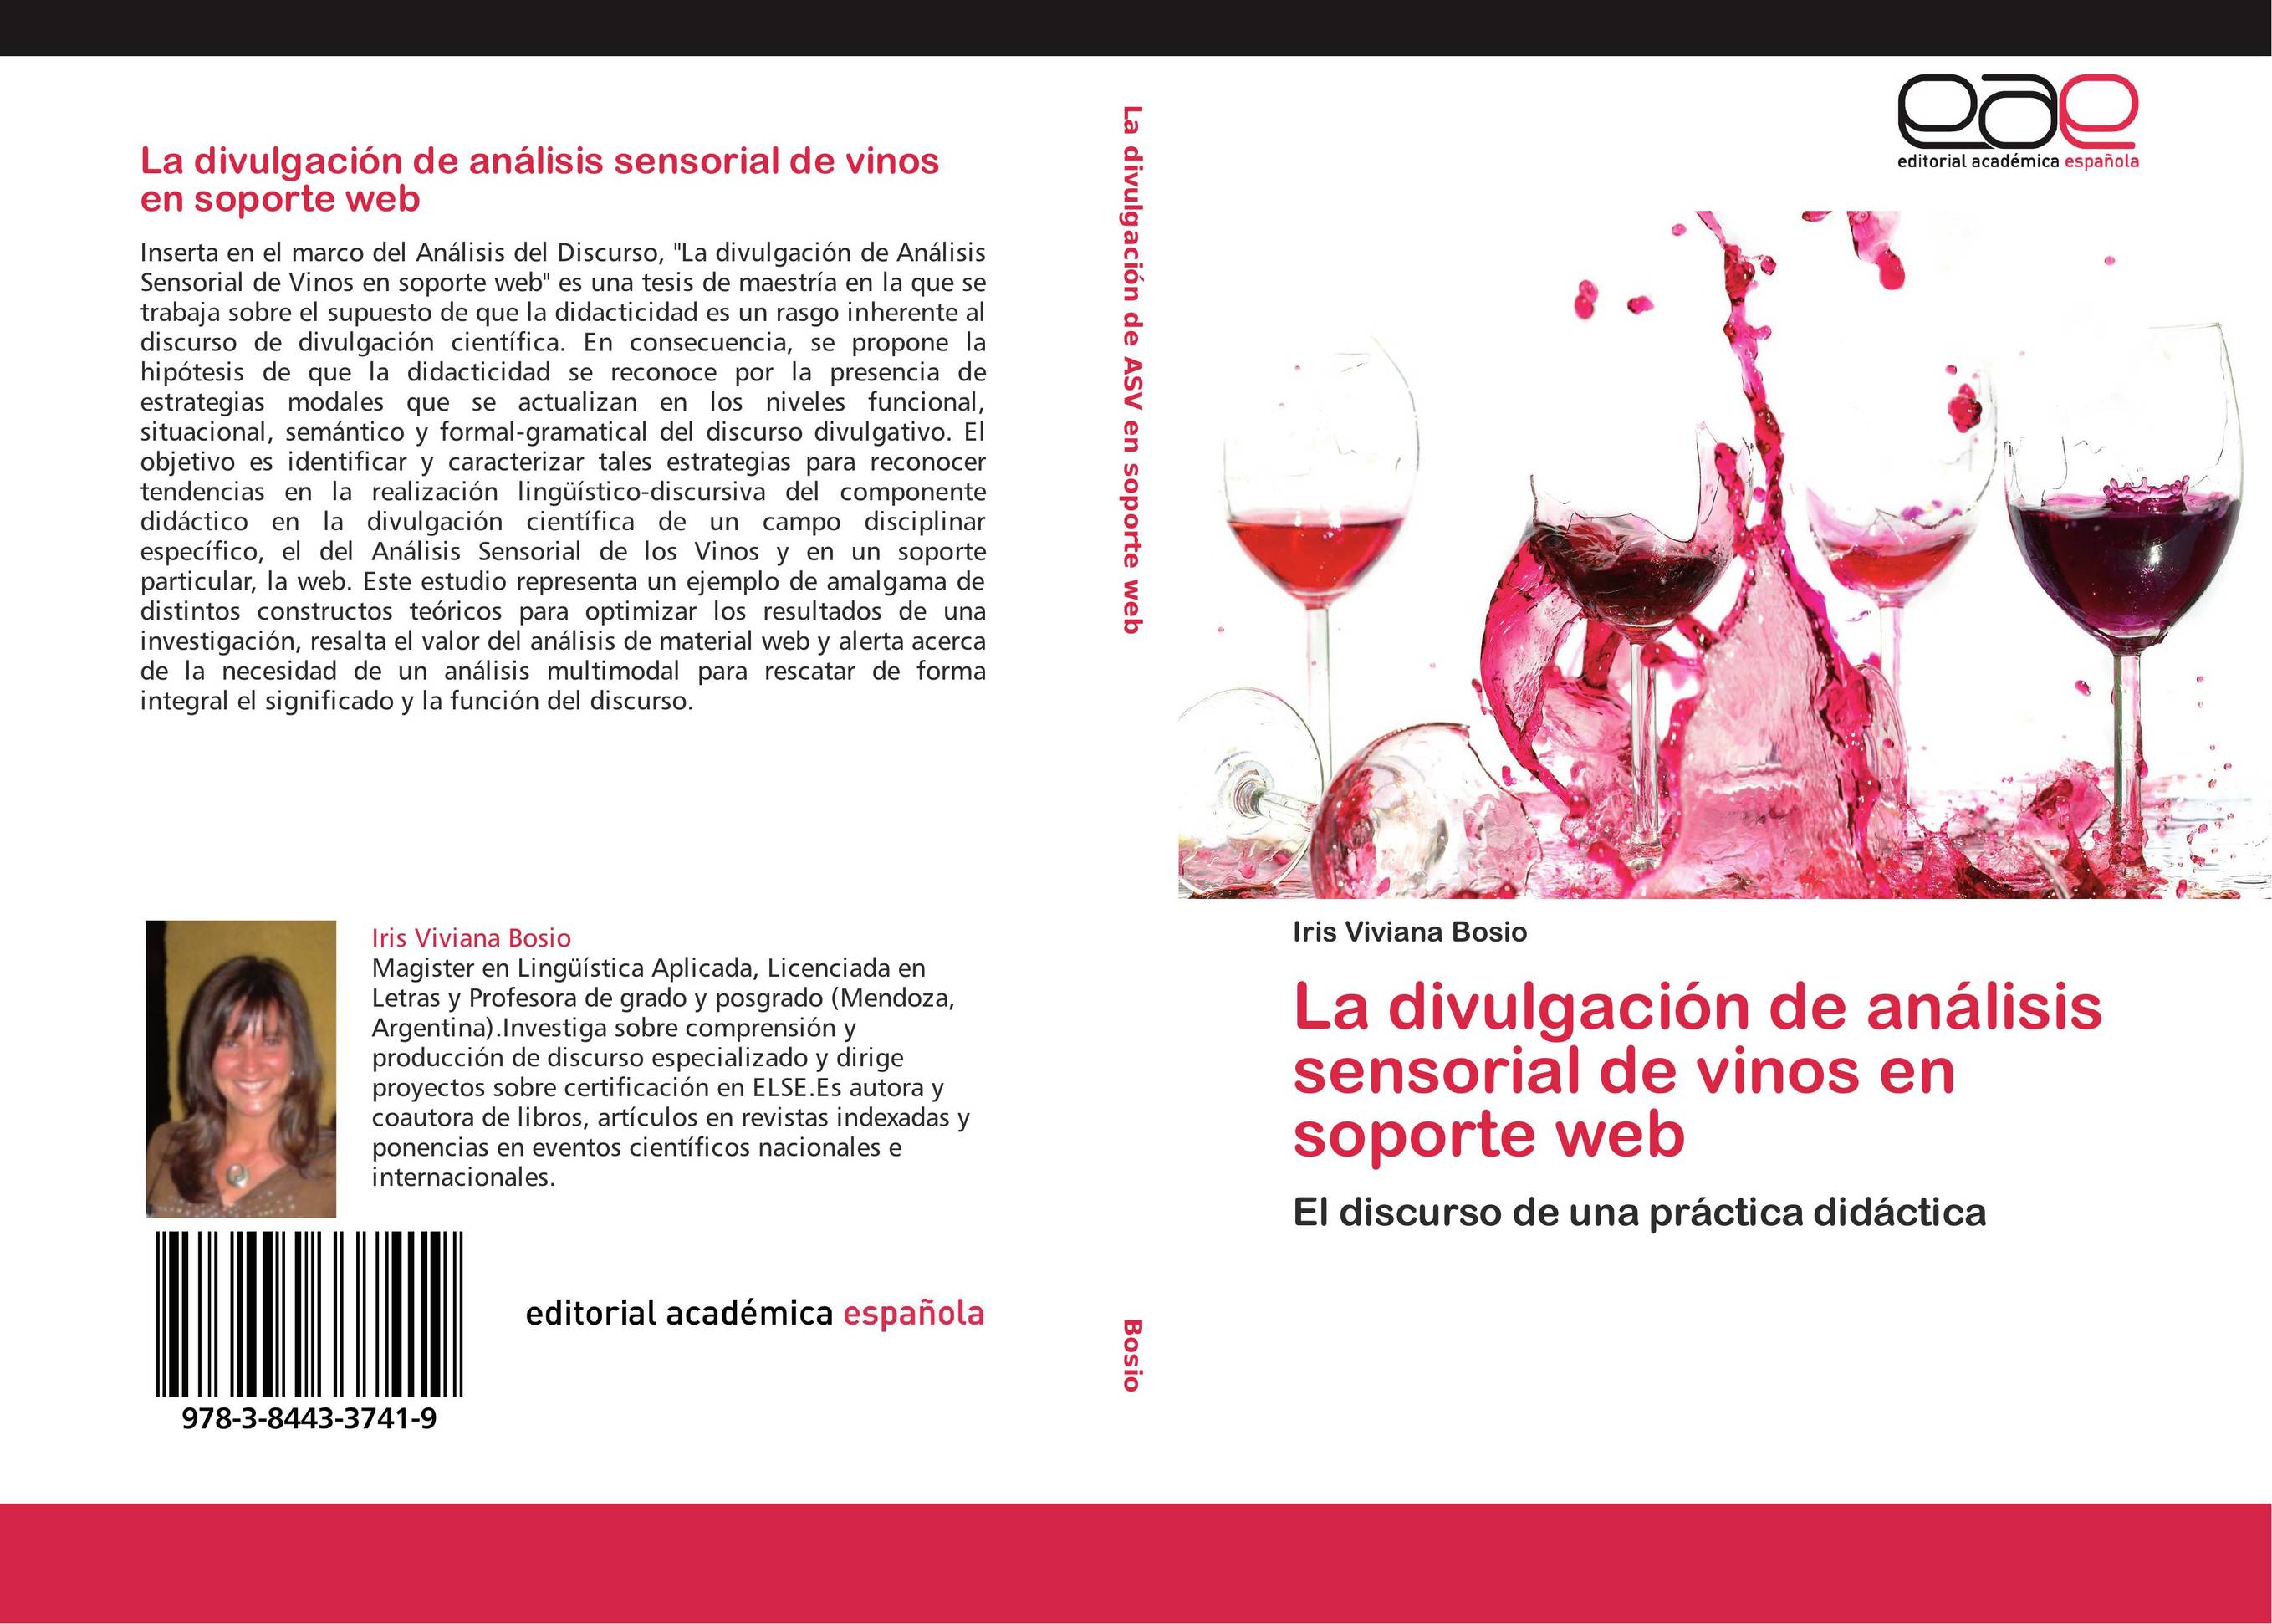 La divulgación de análisis sensorial de vinos en soporte web